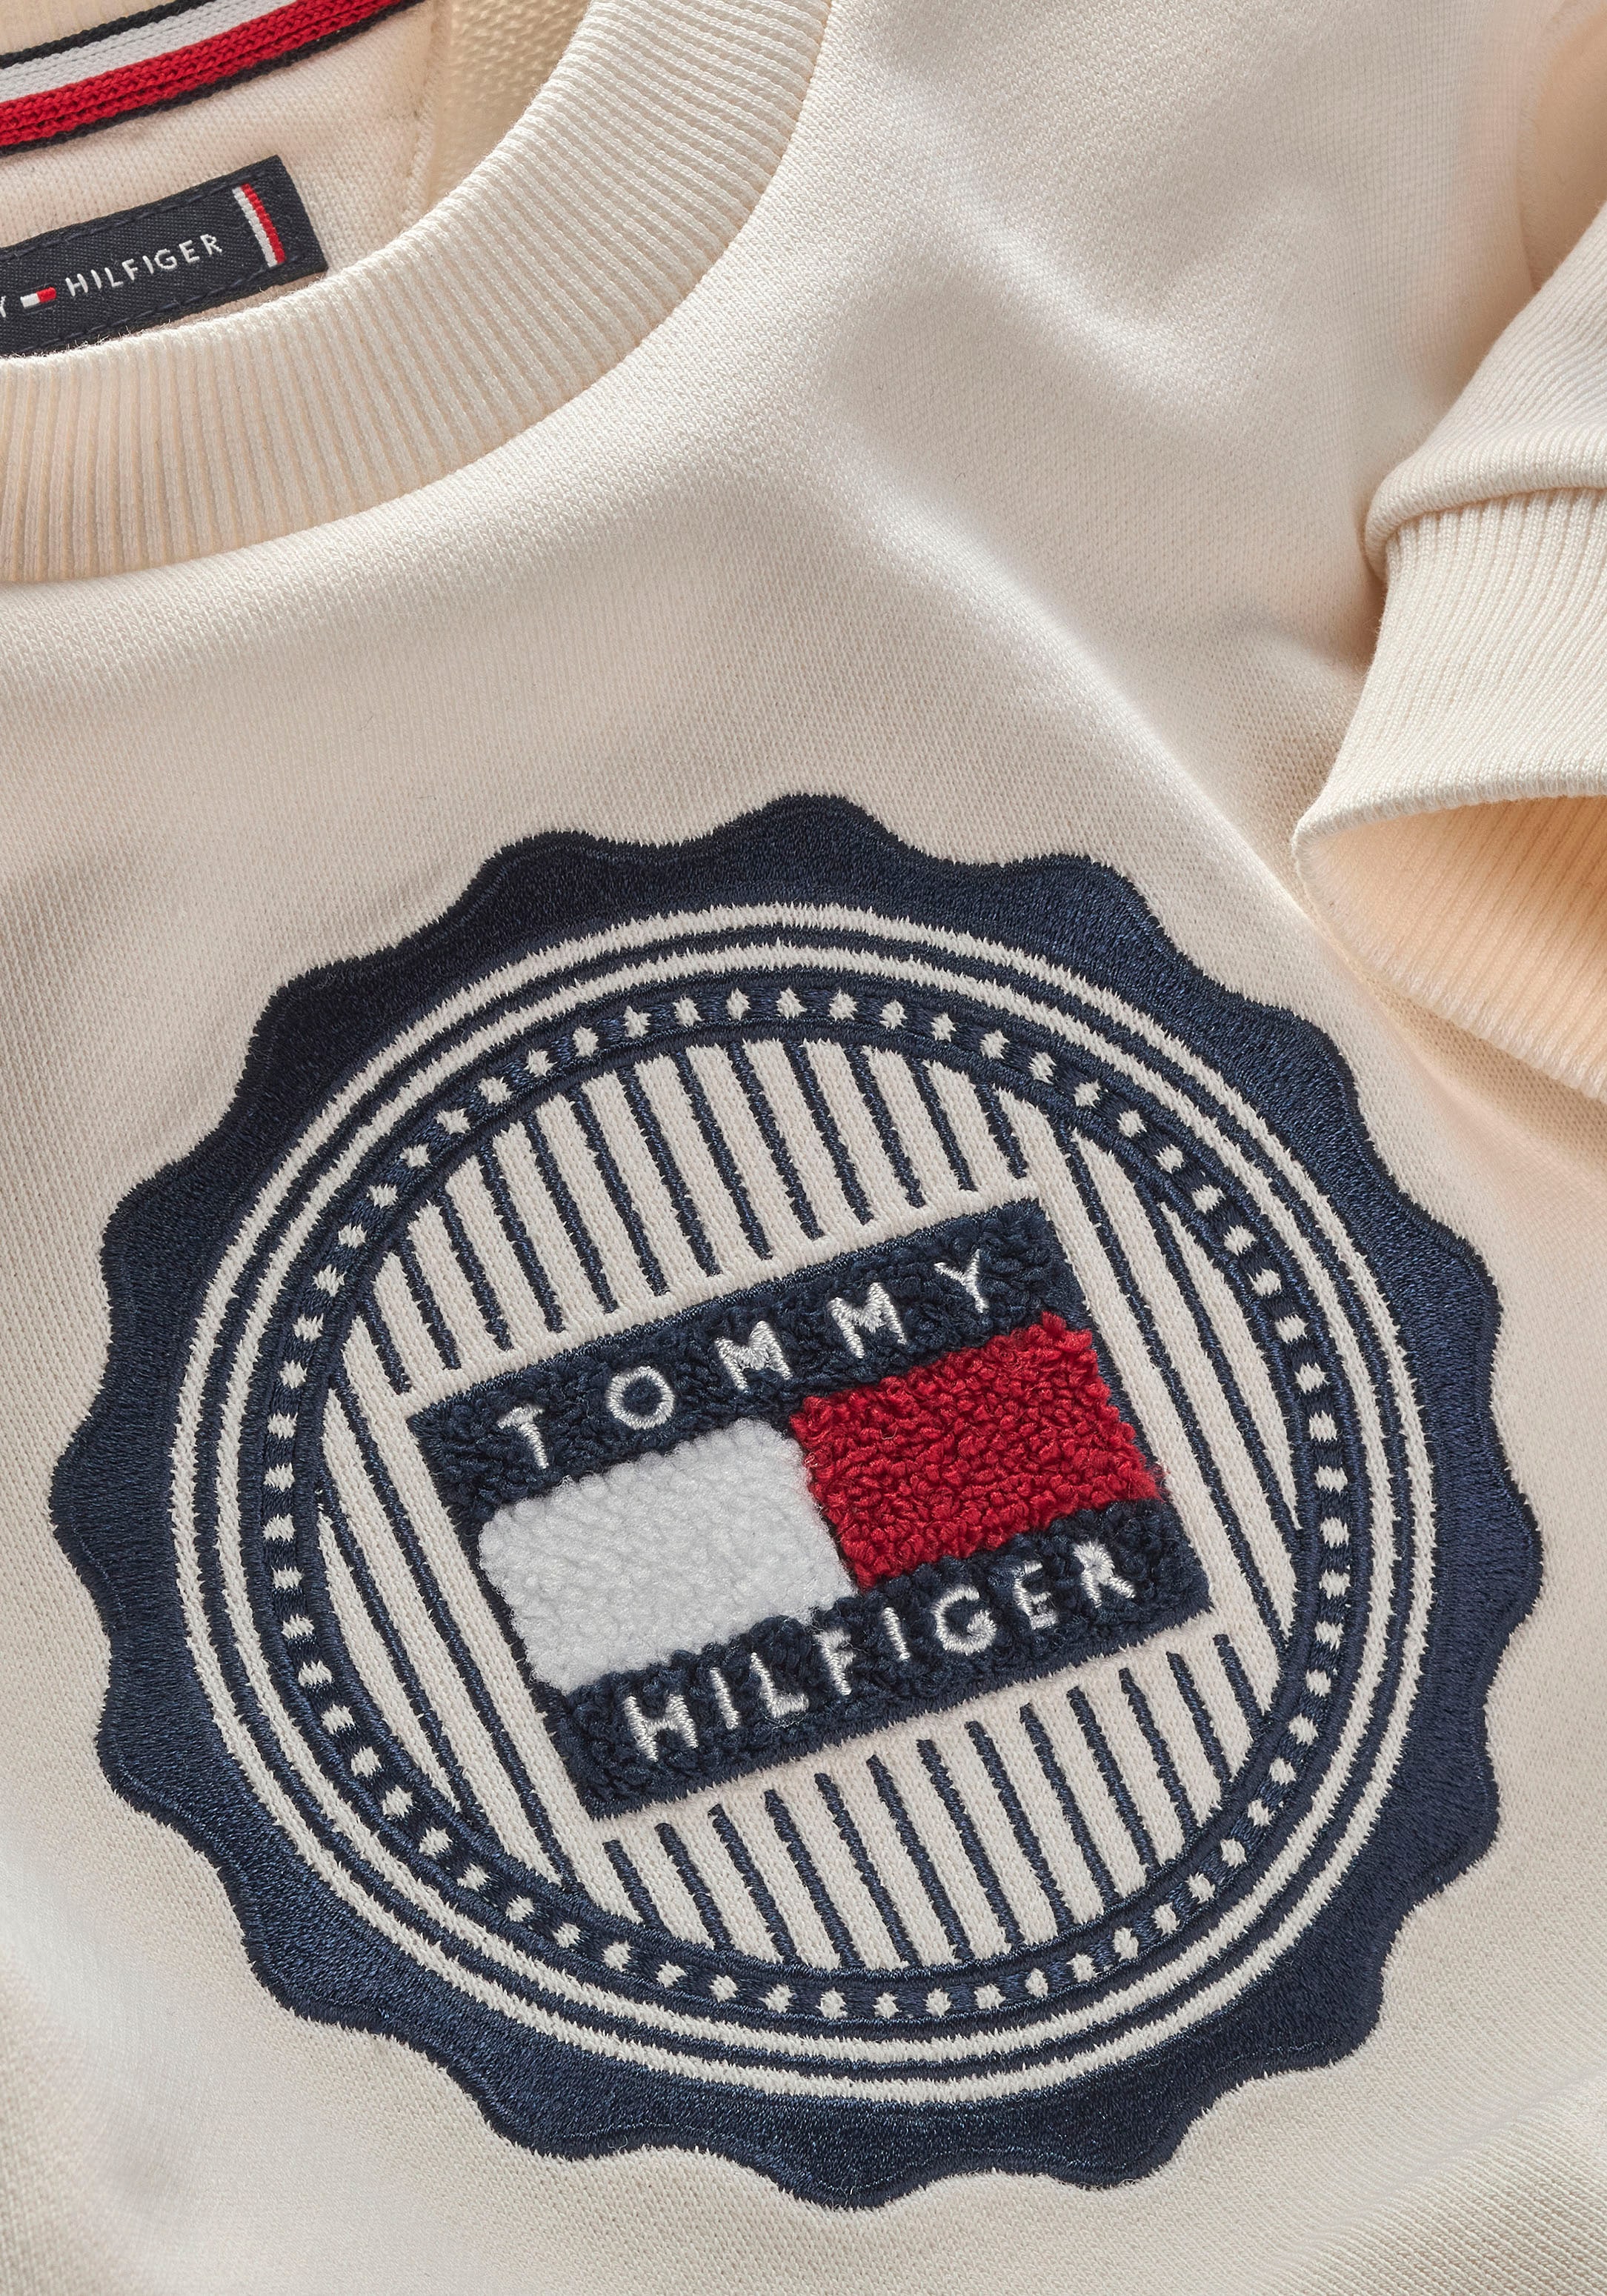 Tommy Hilfiger Sweatshirt »STAMP EMBROIDERY REG SWEATSHIRT«, Kinder bis 16 Jahre mit Logopatch